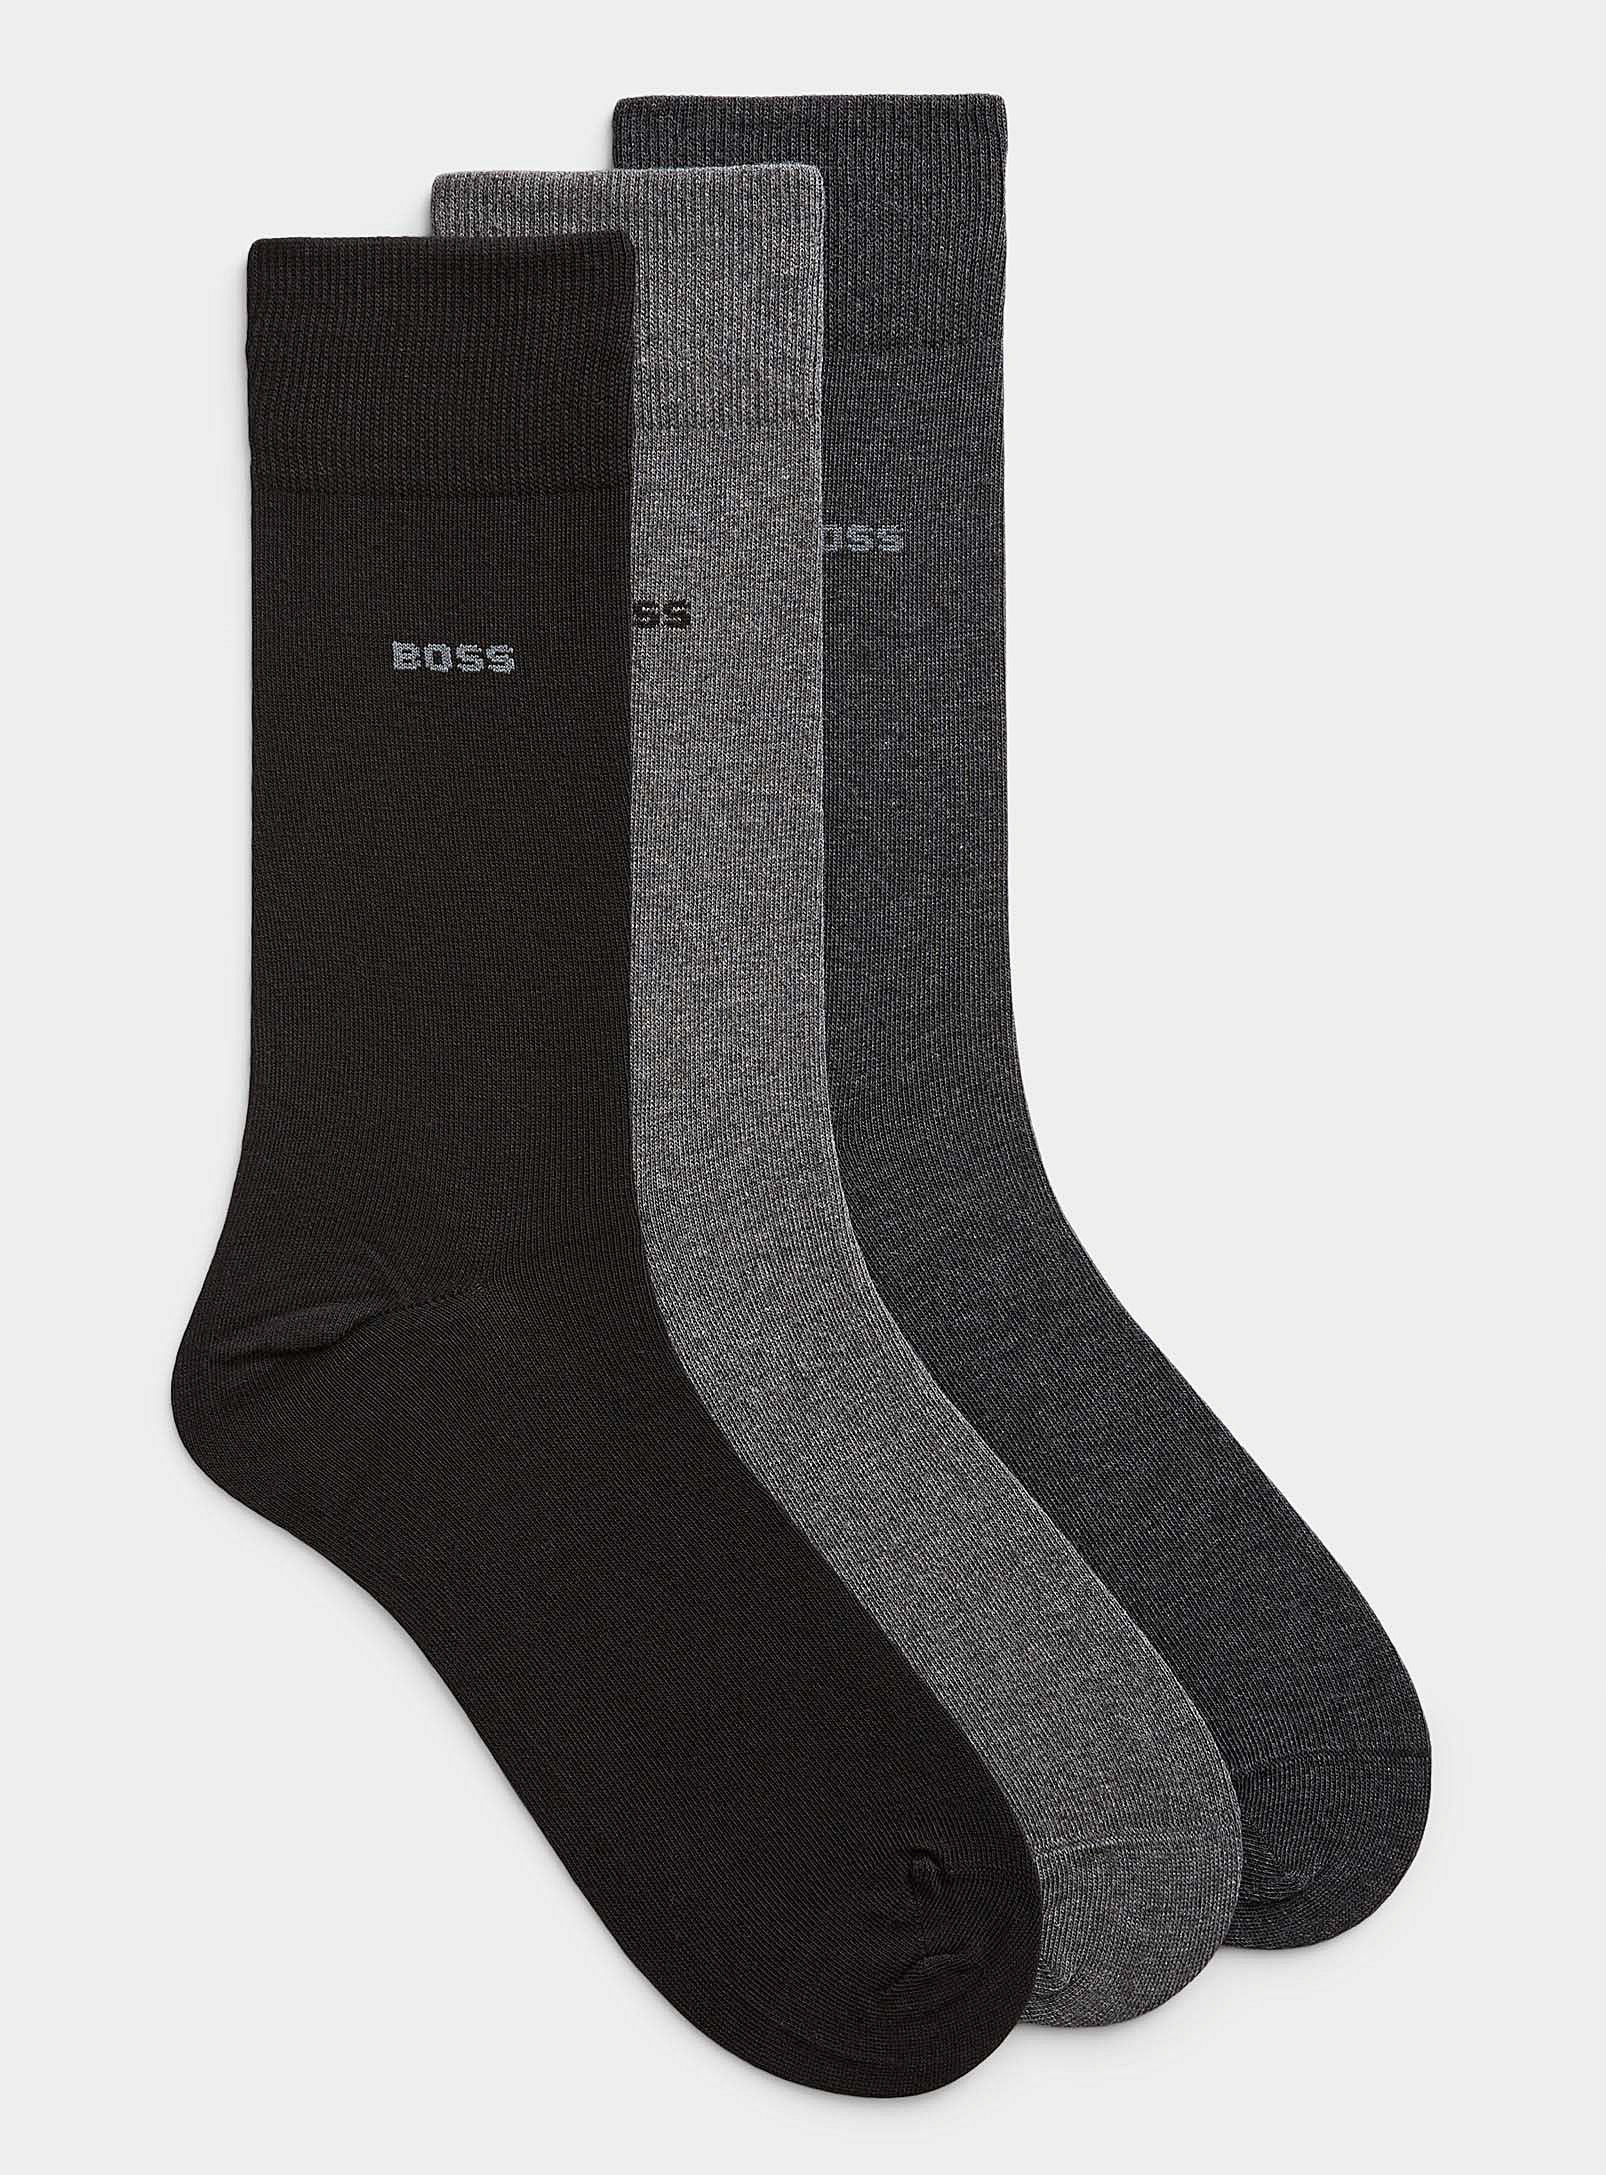 BOSS - Men's Neutral dress socks 3-pack